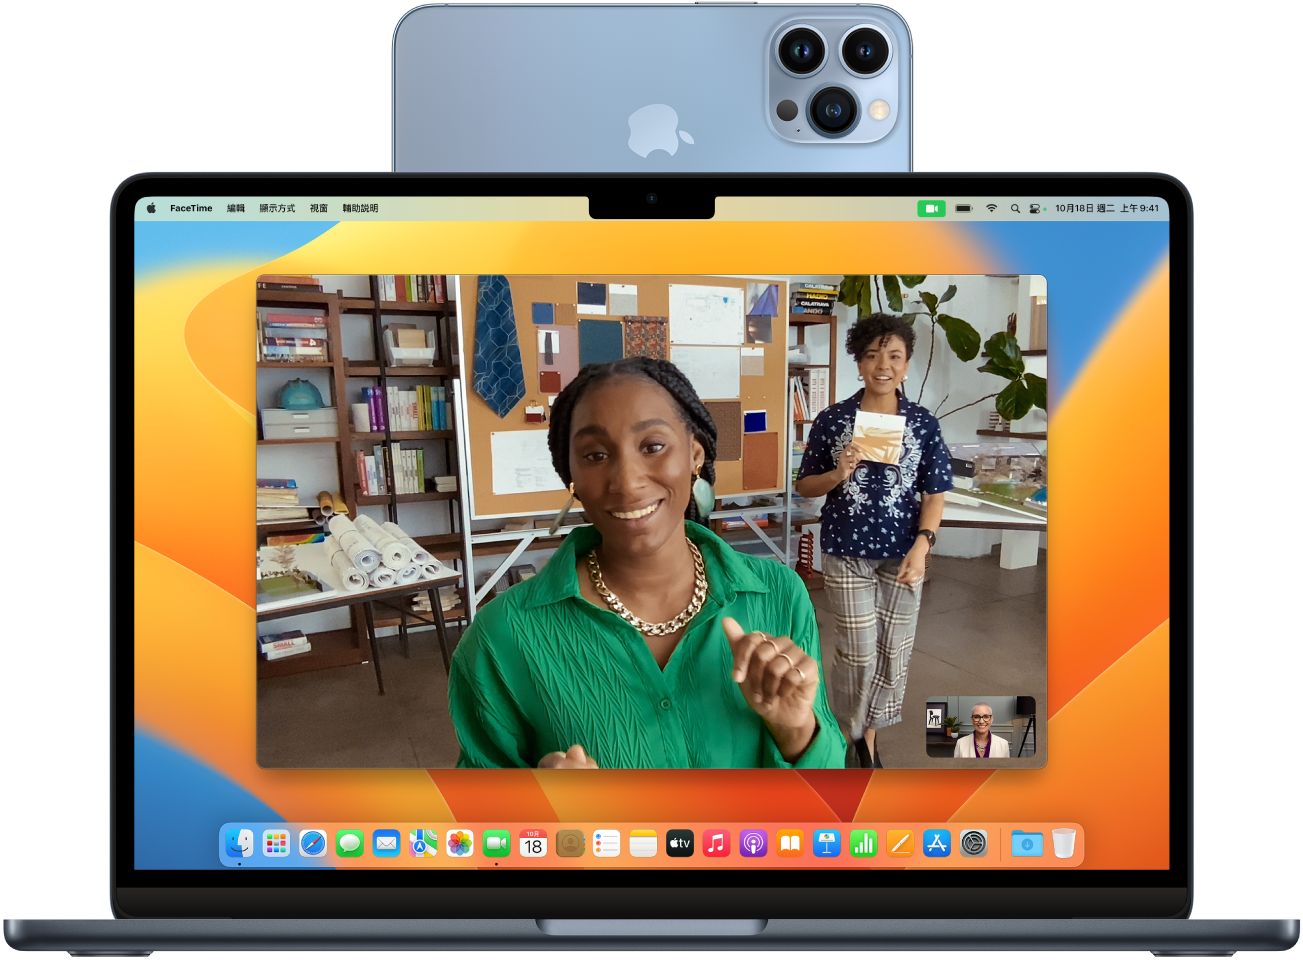 Mac 和正在用作網絡攝影機的 iPhone，且 iPhone 被固定在顯示器的頂部。在 Mac 顯示器上可看到來自 iPhone 相機的影像。